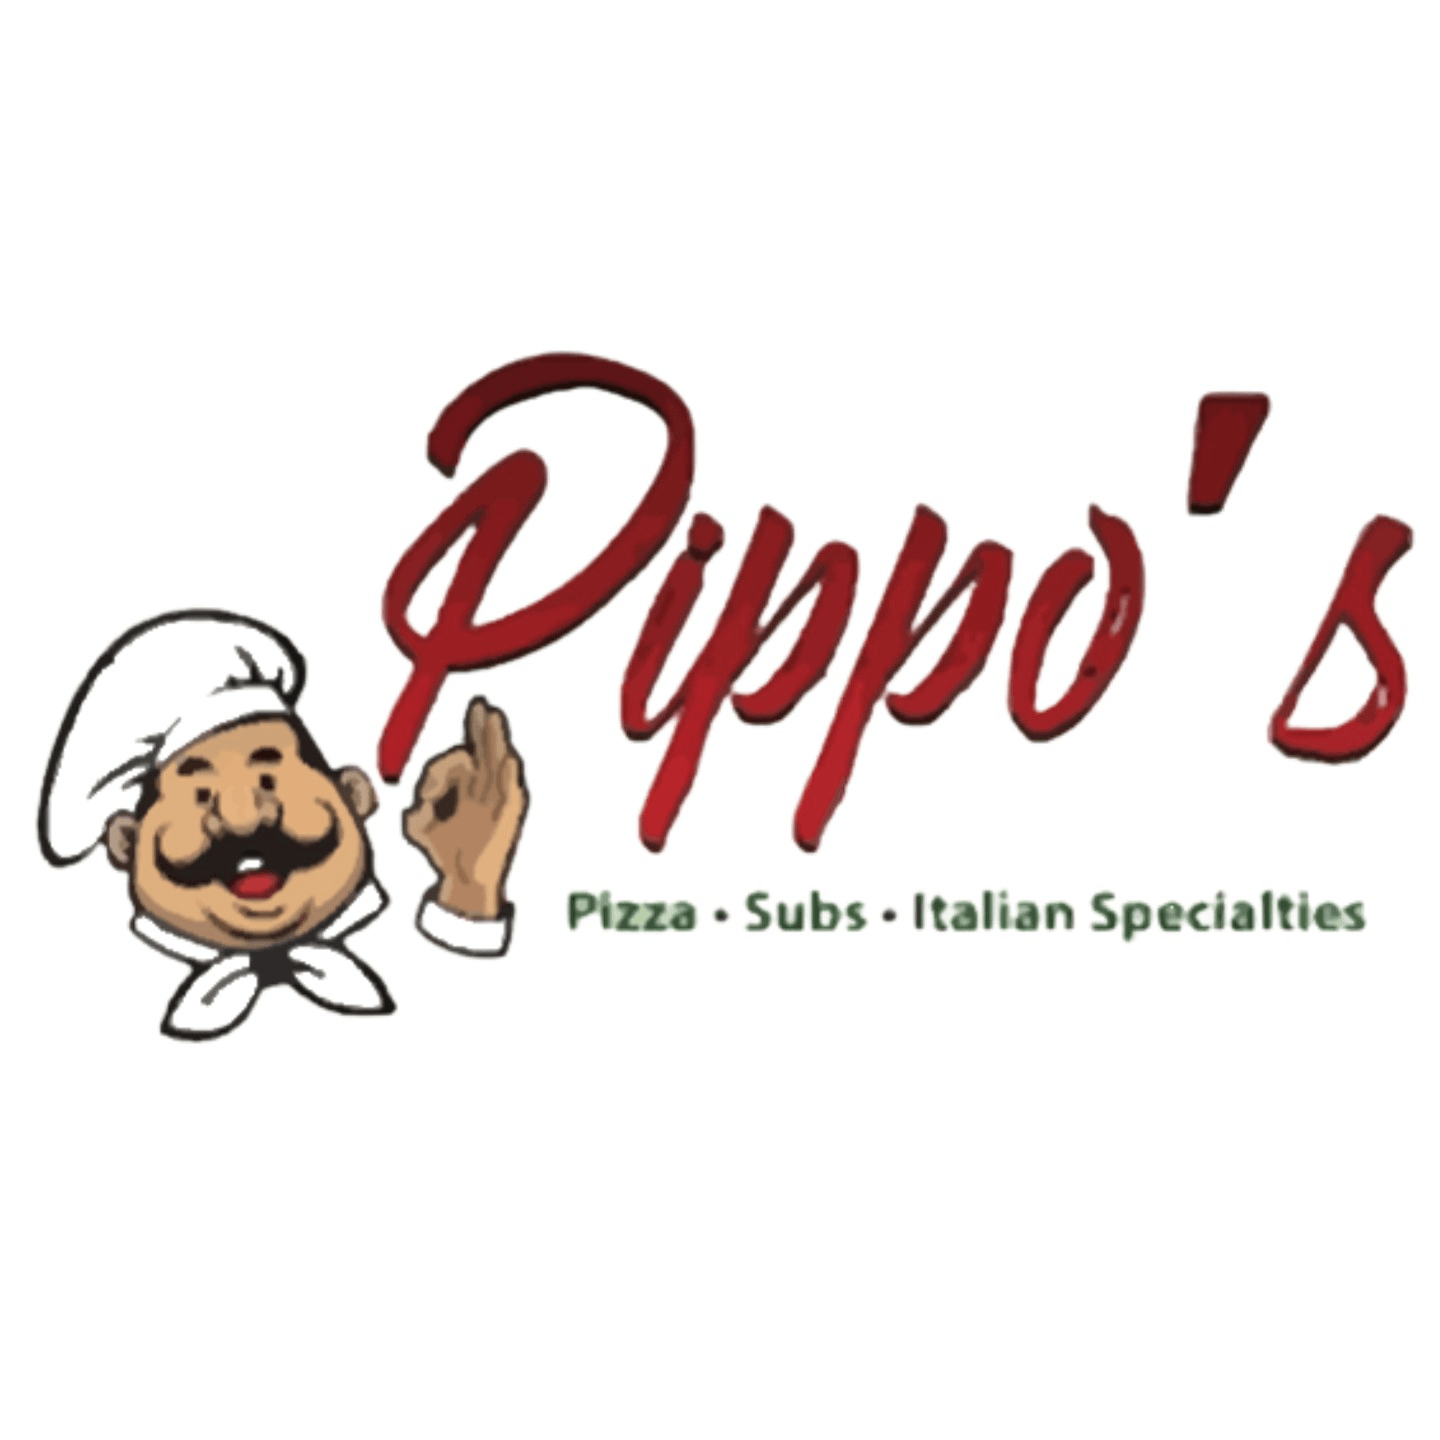 Pizza, Subs, & Italian Specials!